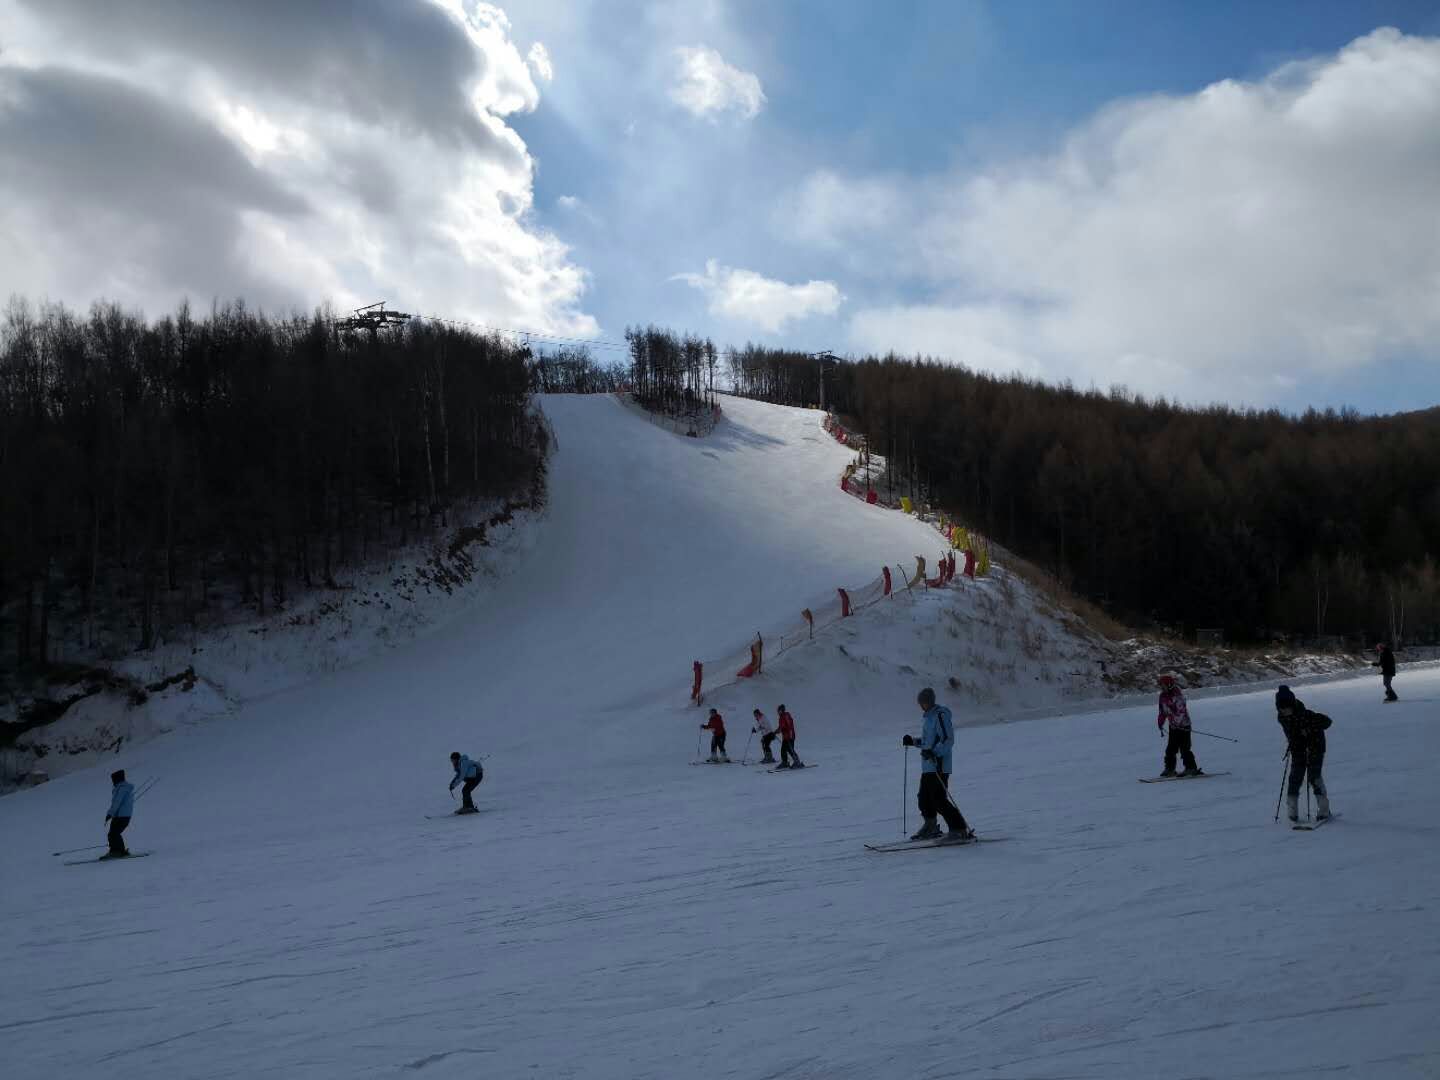 【携程攻略】赤峰美林谷滑雪场景点,非常值得去，雪道分A级B级，有初，中，高三个等级，适合不同水平滑雪…